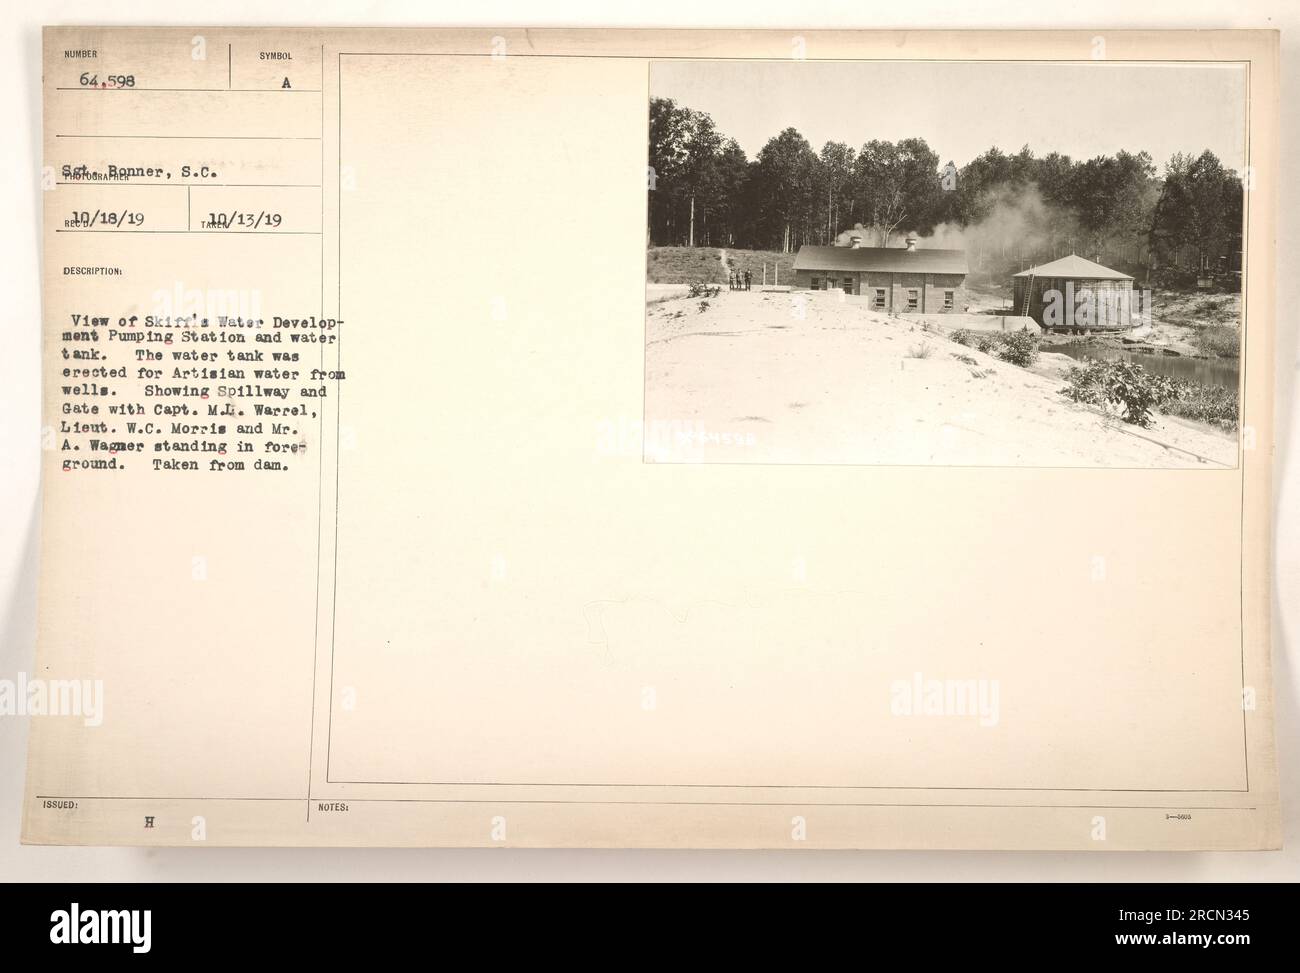 Vue de la station de pompage de Skiff's Creek Water Development et du réservoir d'eau, qui a été construit pour fournir de l'eau artésienne à partir de puits. L'image montre le déversoir et la barrière, avec le capitaine M.L. Warrel, Lieut. W.C. Morris, et M. A. Wagner debout au premier plan. La photographie a été prise à partir du barrage NUMÉRO 64,598. Banque D'Images